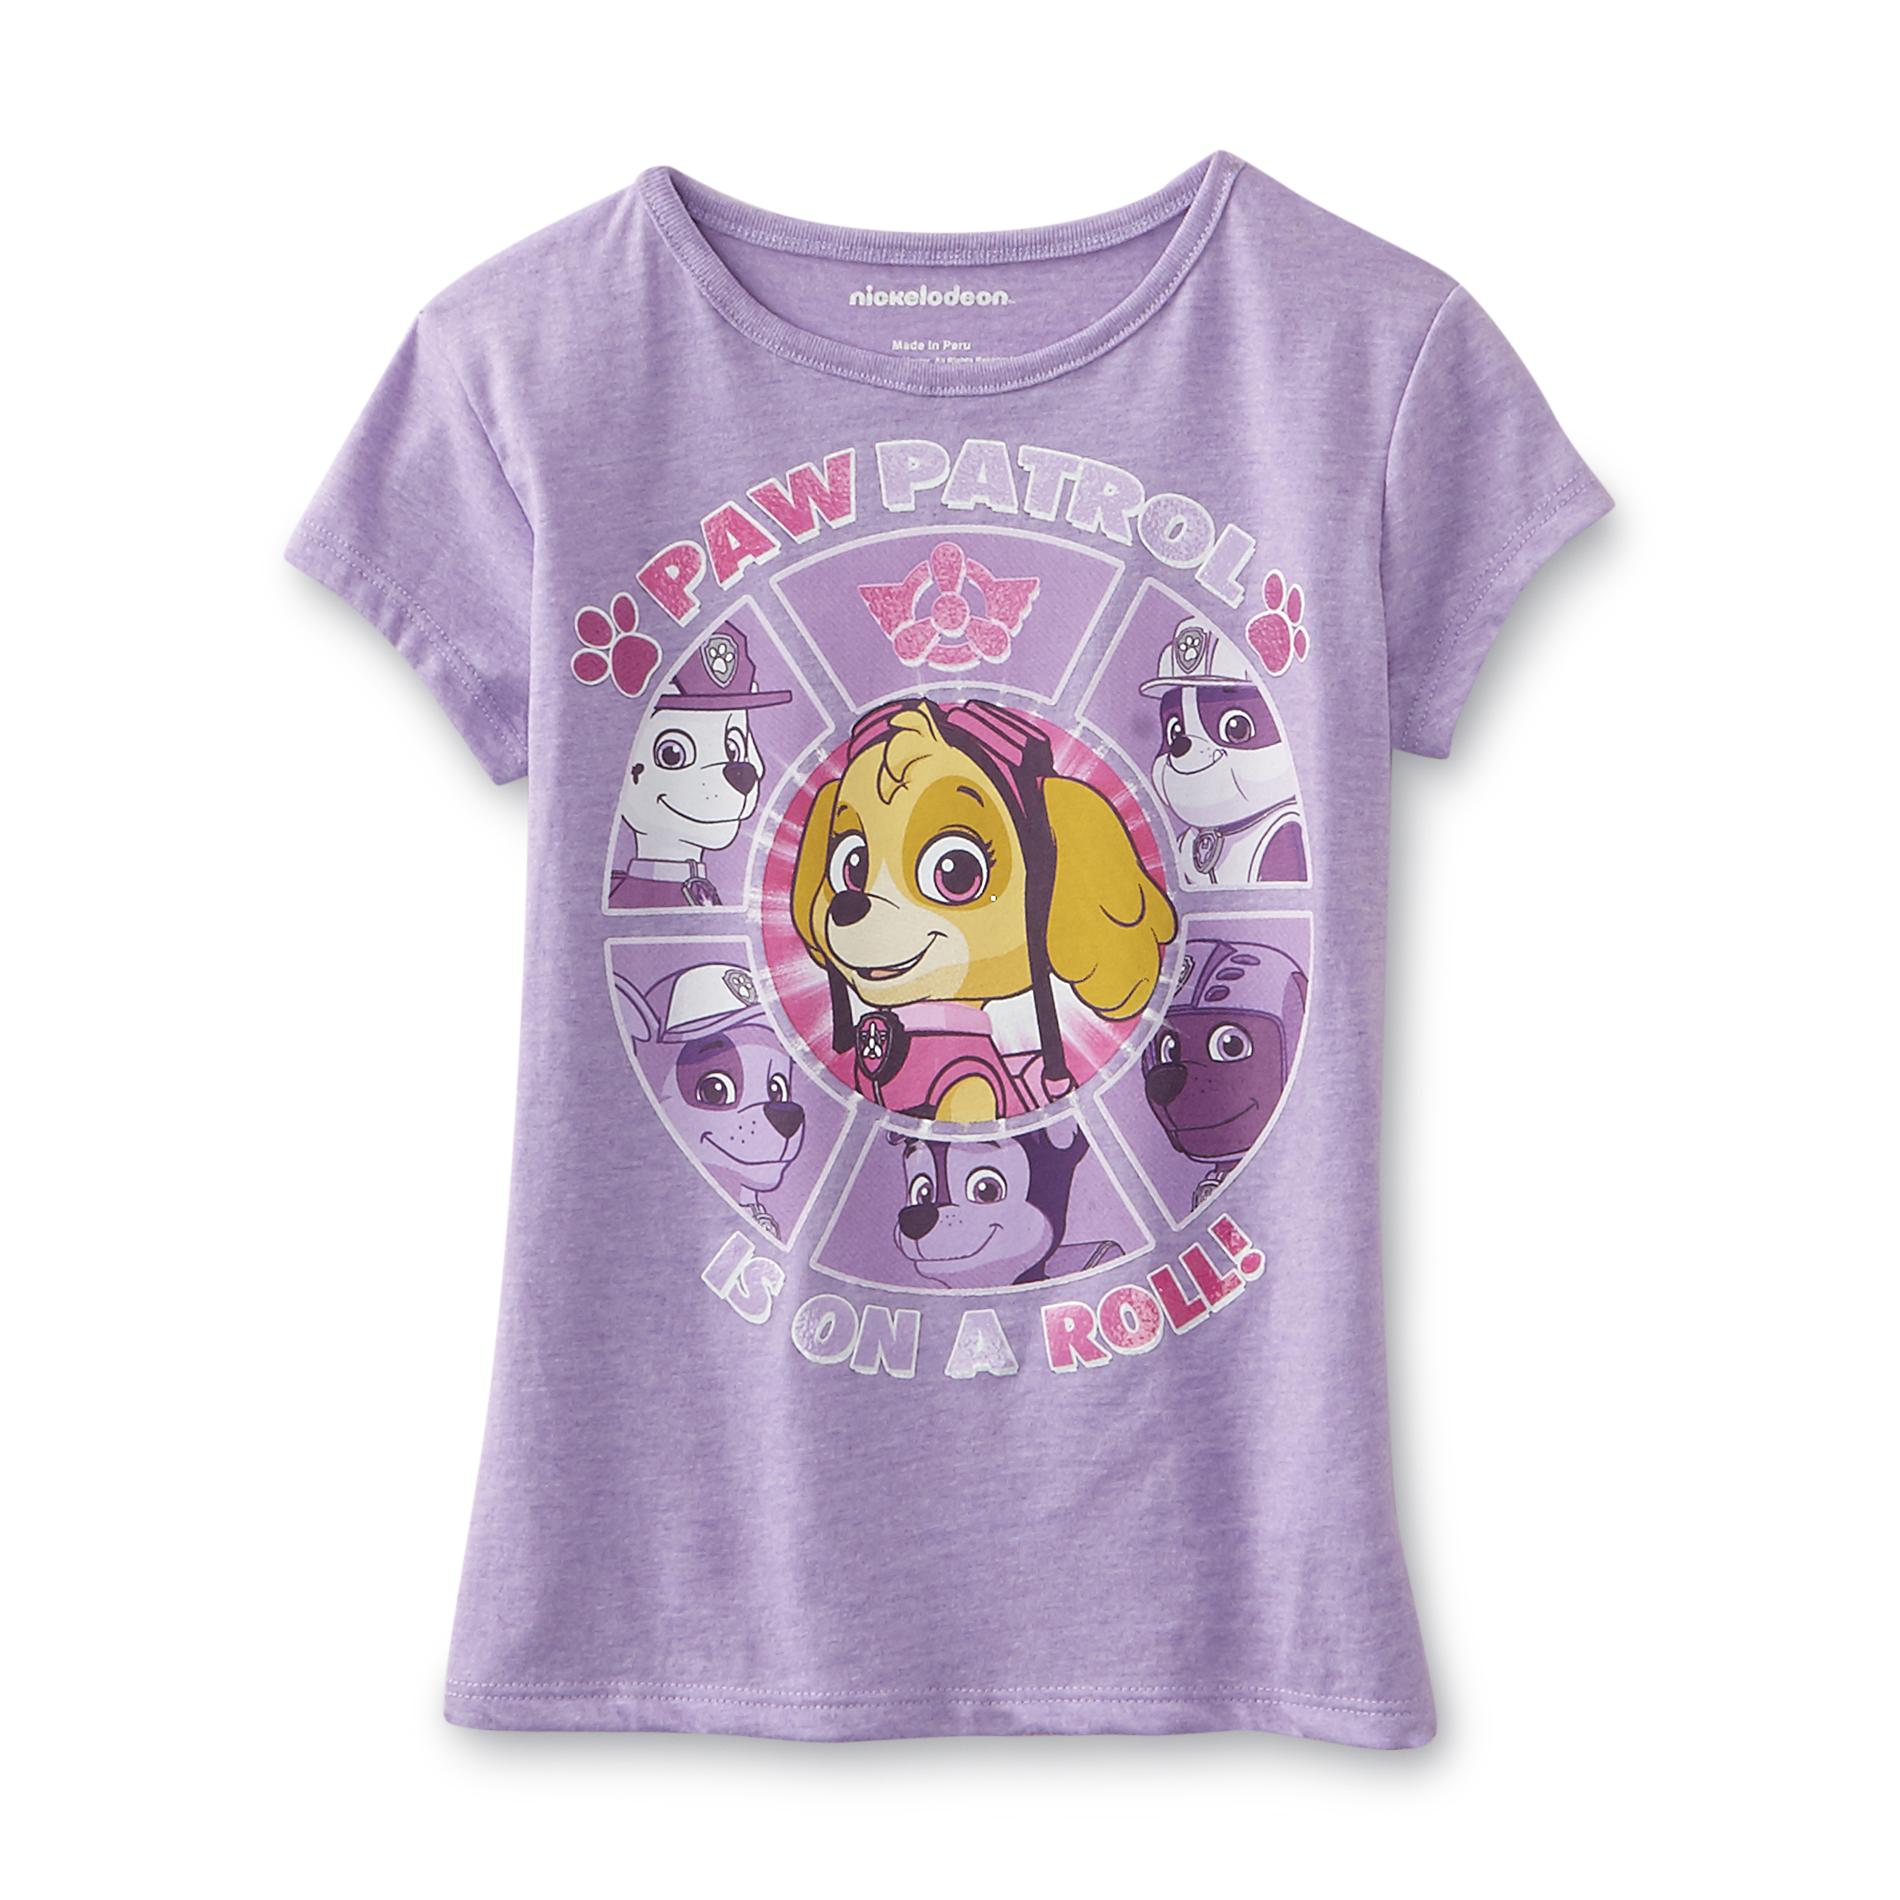 Nickelodeon PAW Patrol Girl's Graphic T-Shirt - Skye